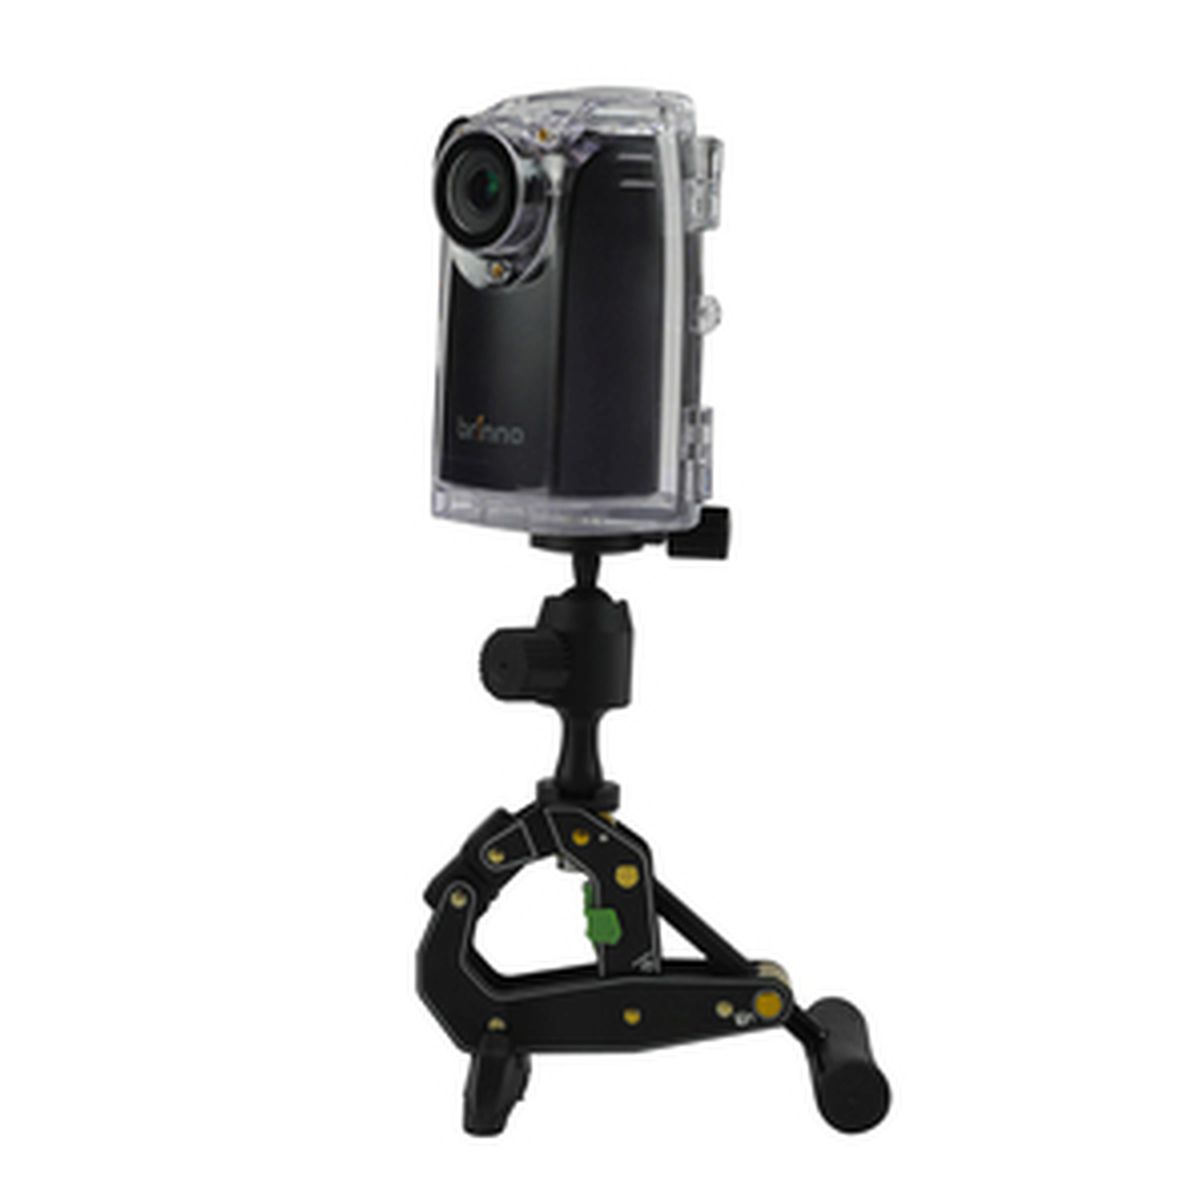 Brinno BCC200 HDR Zeitraffer -Konstruktions- Kamera Pro Bundle